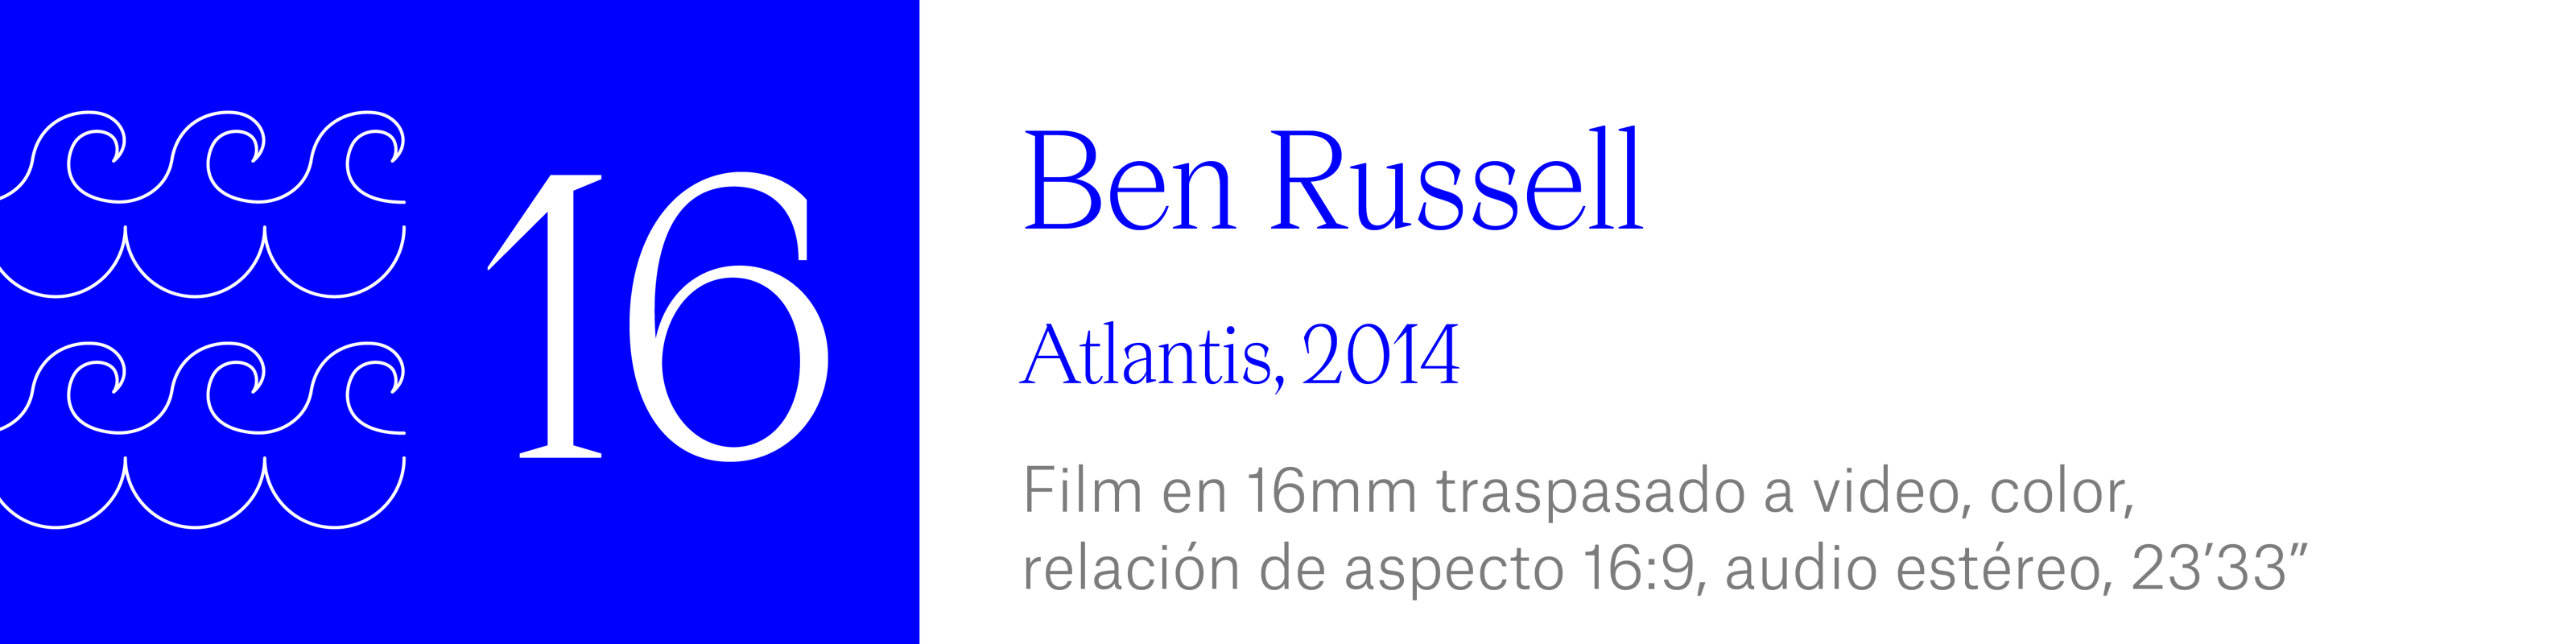 The Wave (16) - Ben Russell - Atlantis, 2014. Film en 16mm traspasado a video, color,relación de aspecto 16:9,audio estéreo, 23 minutos, 33 segundos.